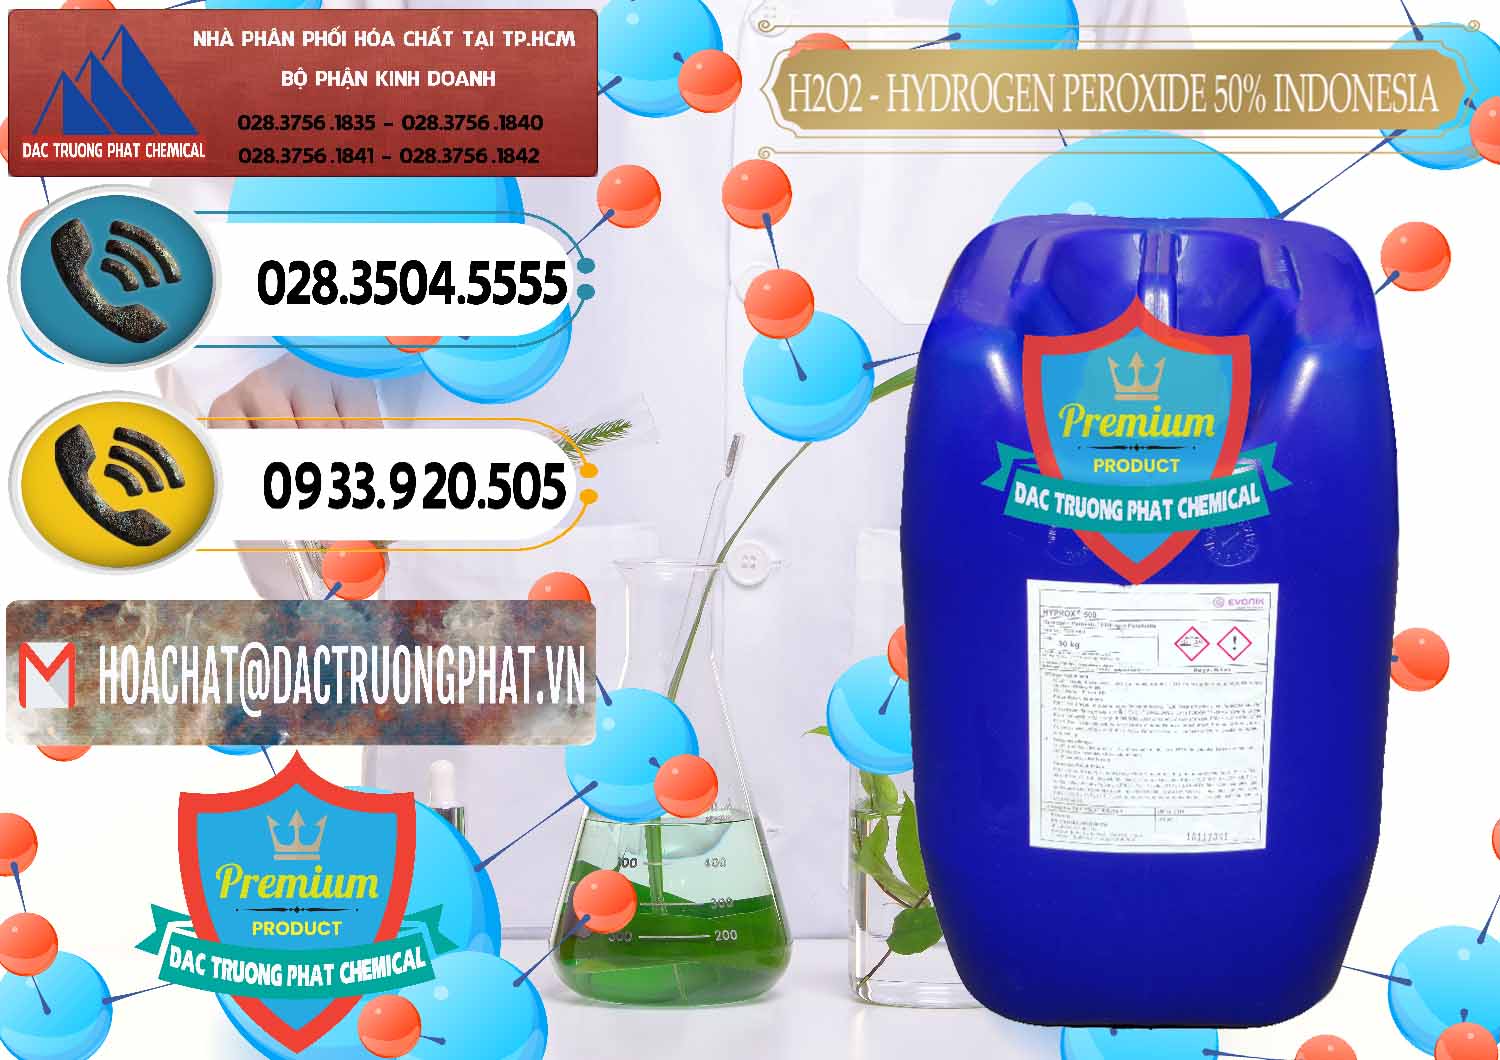 Phân phối và bán H2O2 - Hydrogen Peroxide 50% Evonik Indonesia - 0070 - Công ty chuyên phân phối _ bán hóa chất tại TP.HCM - hoachatdetnhuom.vn